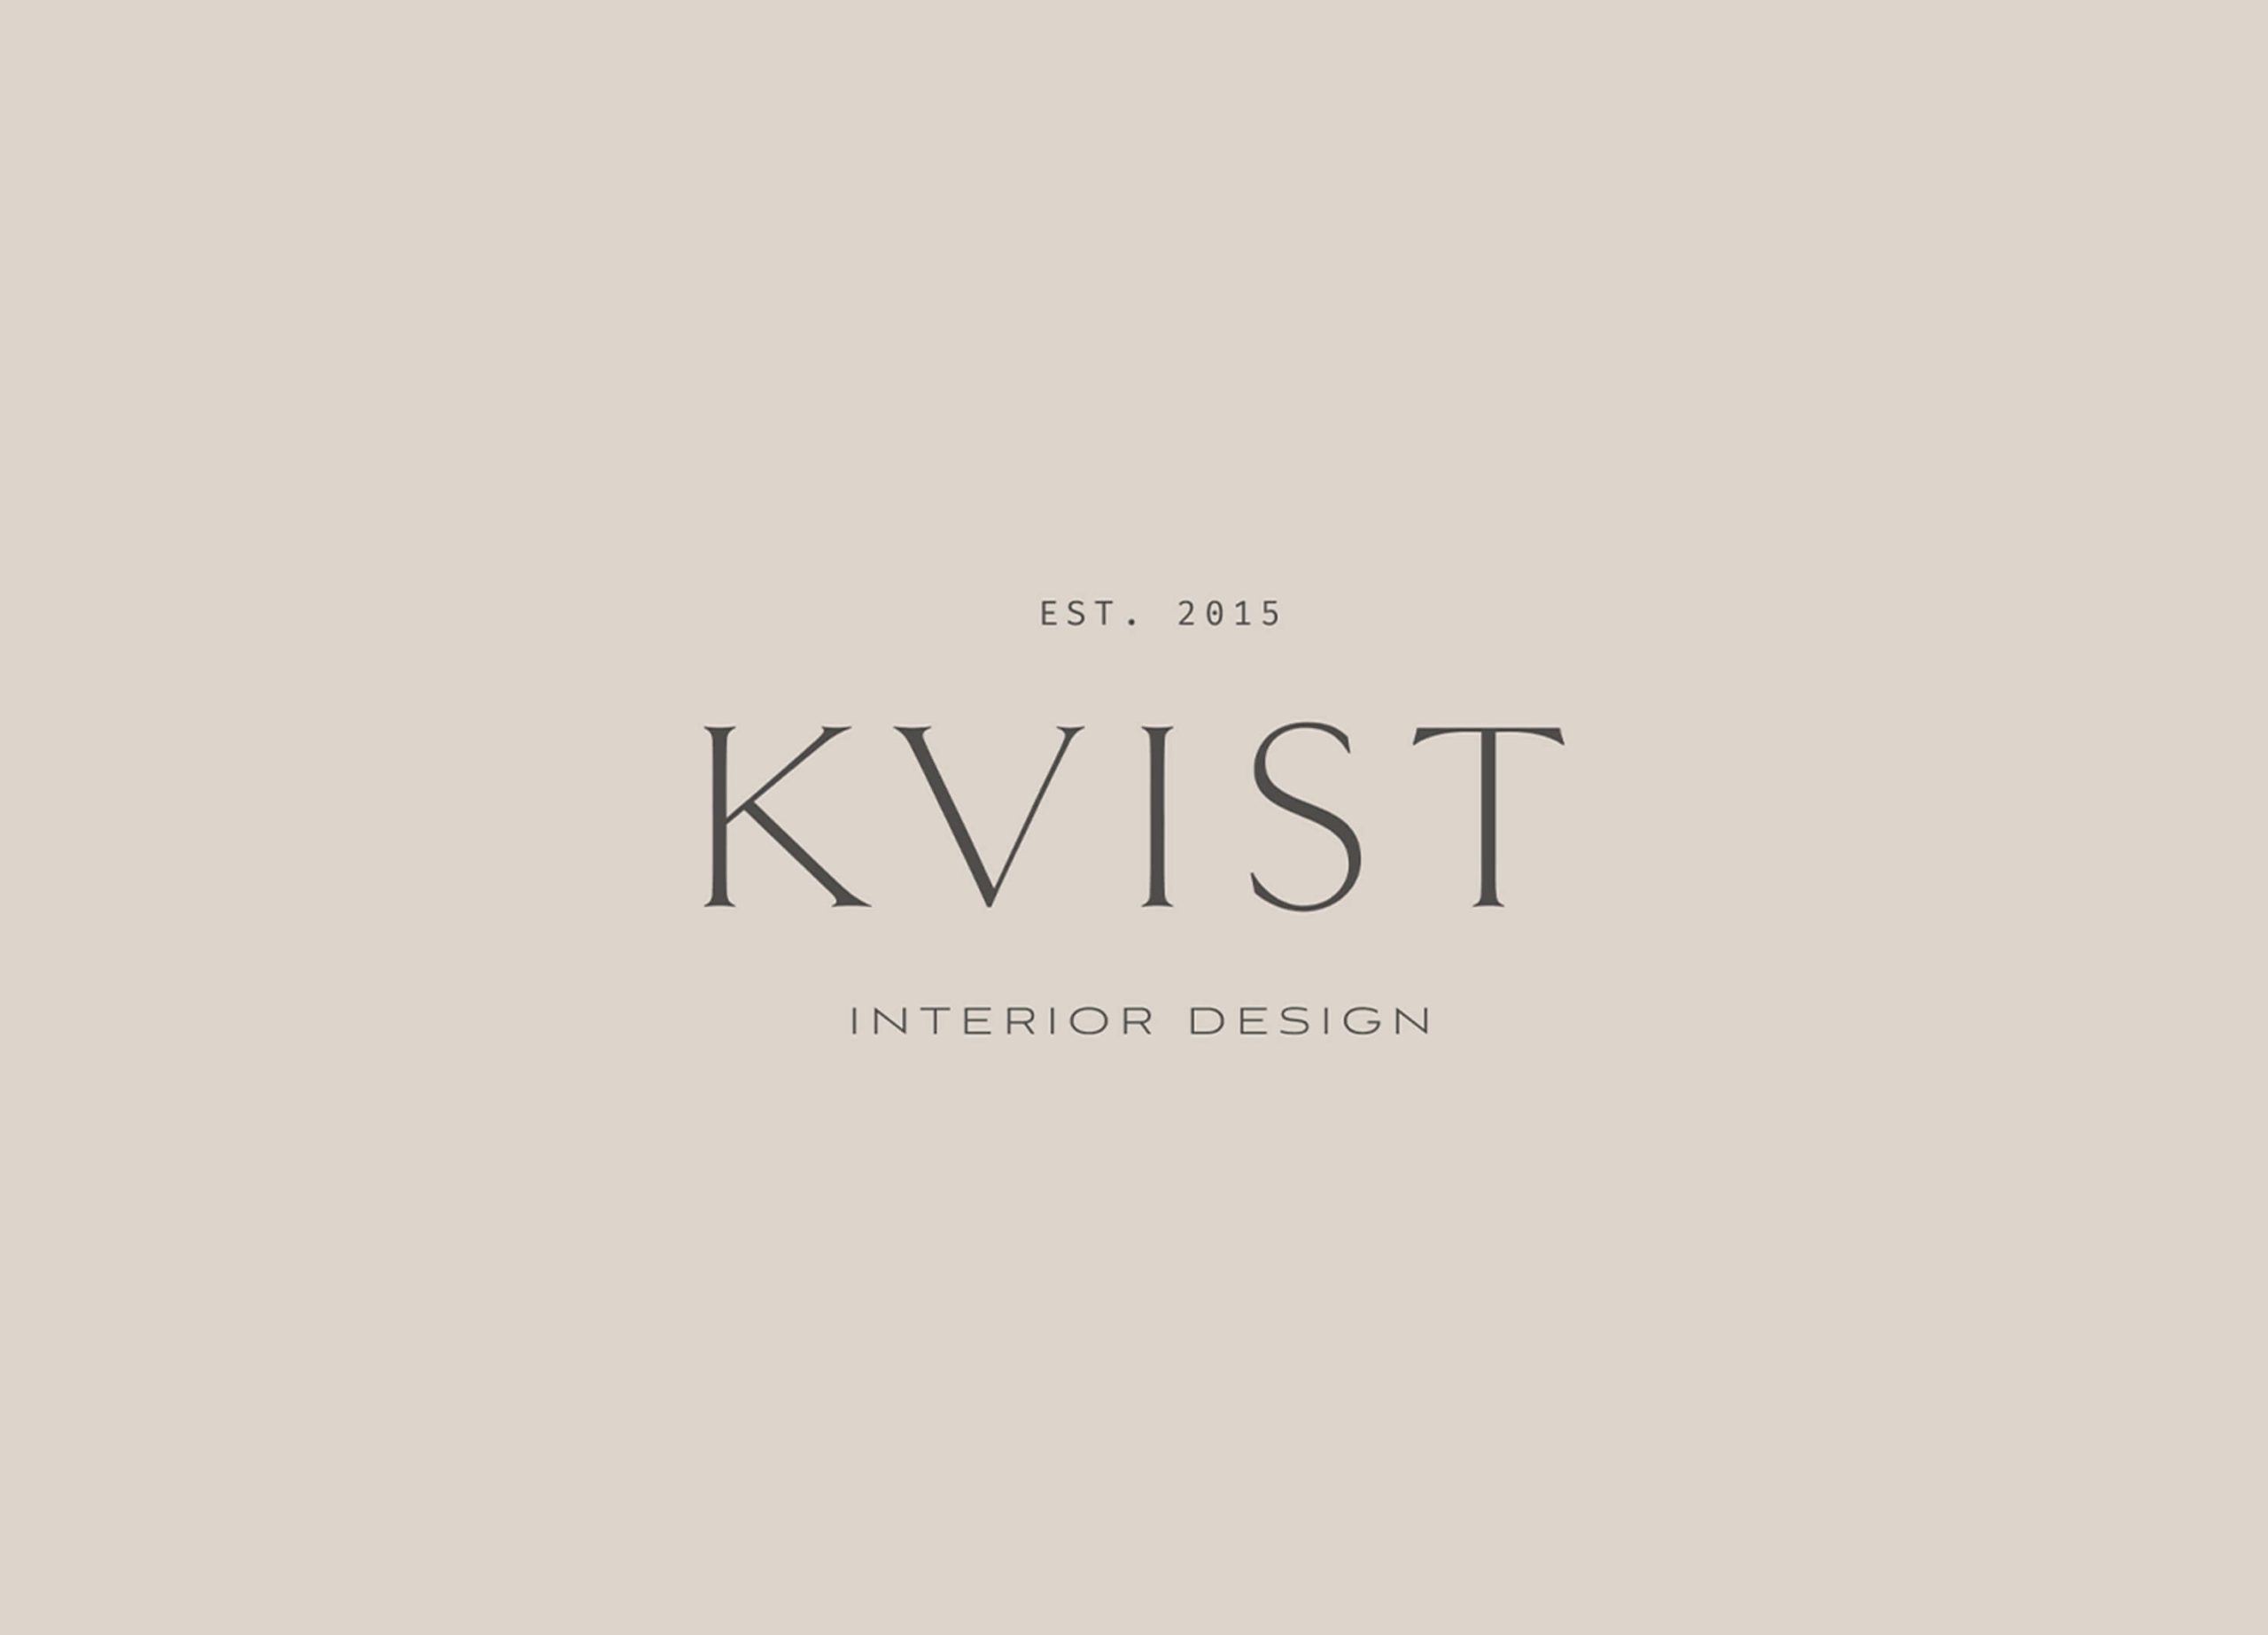 Primary logo for KVIST brand